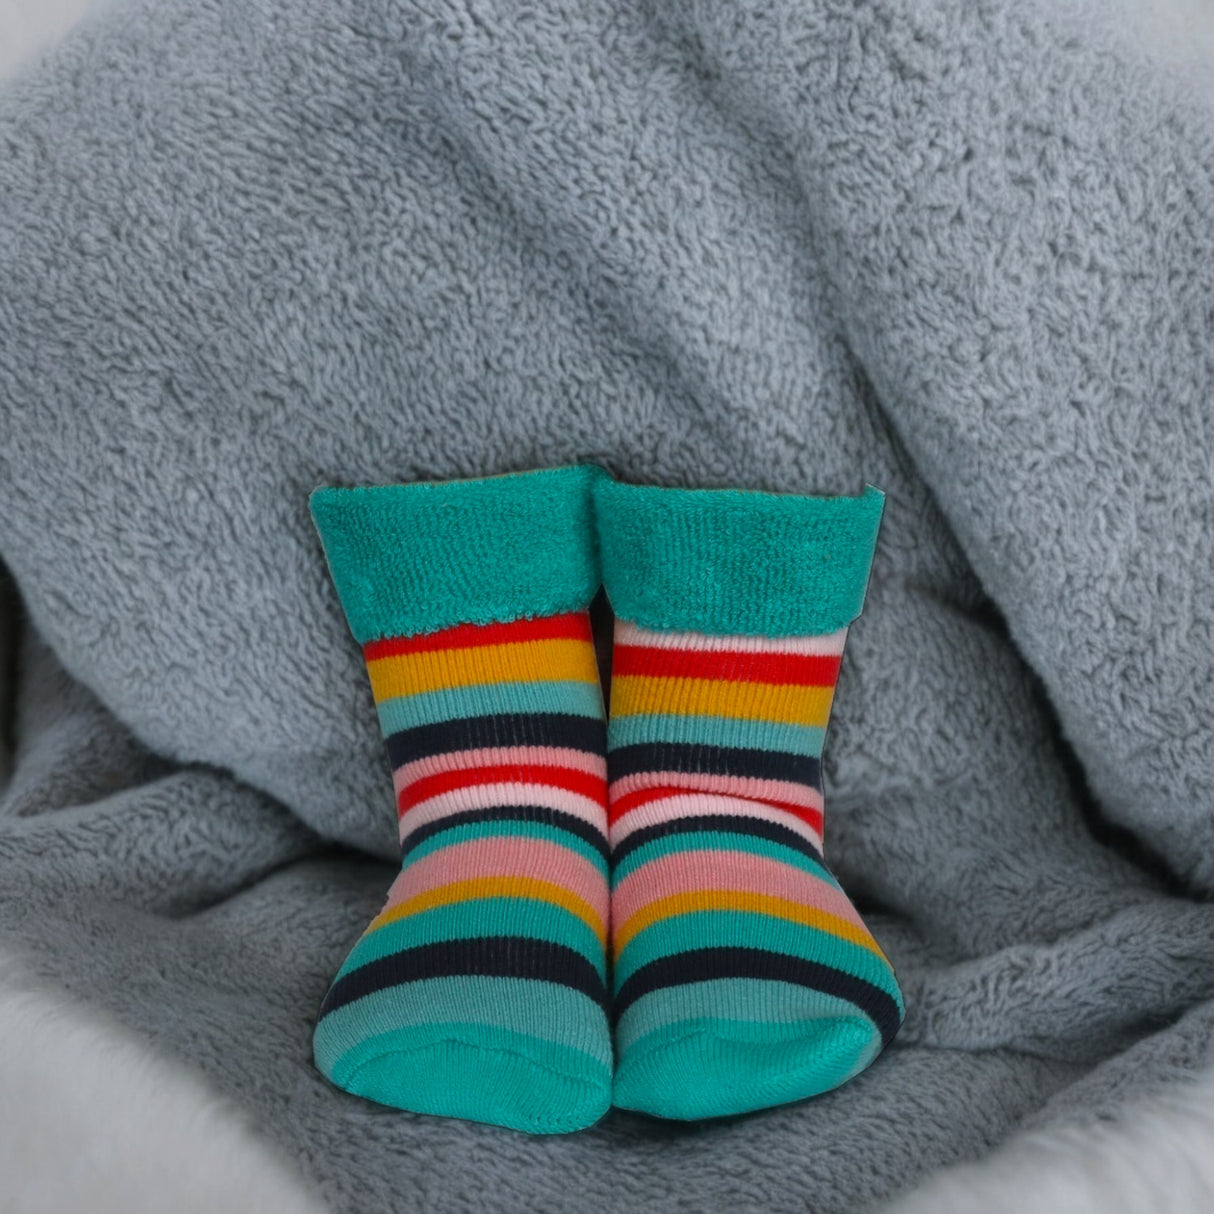 Bunte Streifen Socken Cucamelon Kuschelsocken für Mama und Kind in 38-40 & 1-4 Jahre (2 Paare)